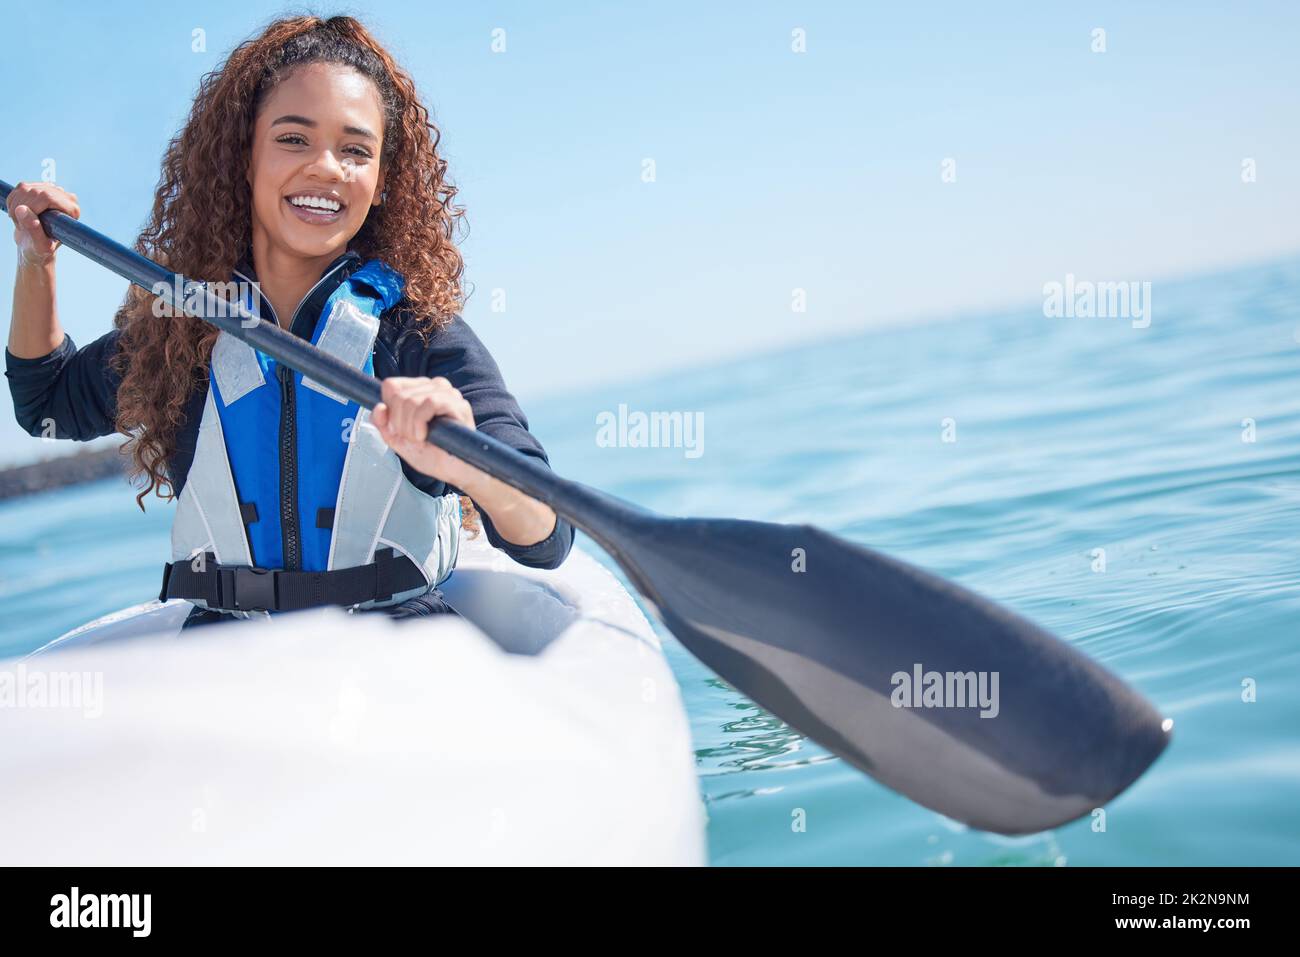 Das Paradies ist nur einen Paddel entfernt. Porträt einer jungen Frau, die an einem See Kajak gefahren ist. Stockfoto